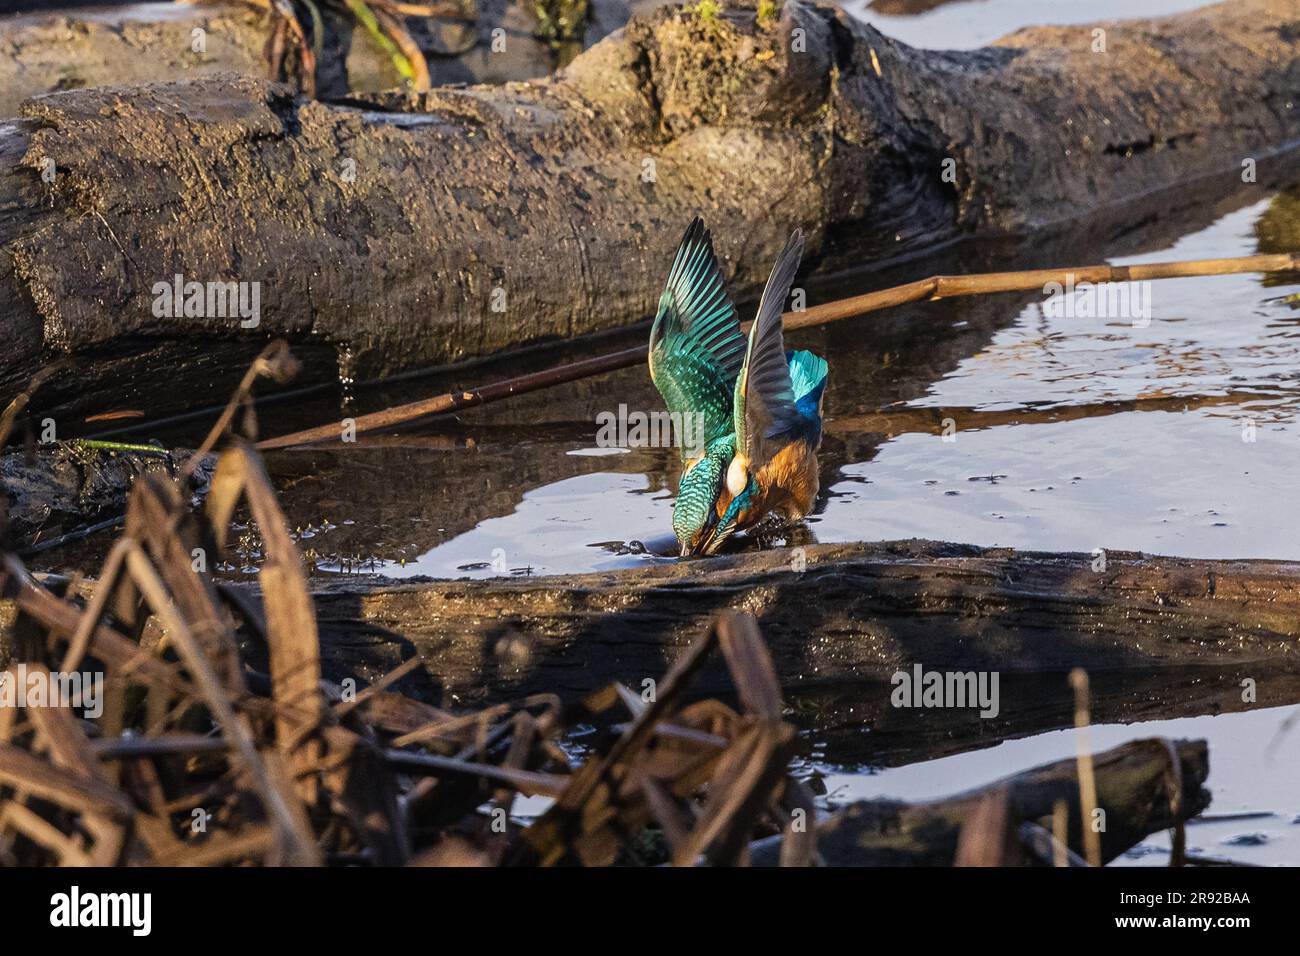 la rivière kingfisher (Alcedo atthis), a capturé la grenouille verte à la fin de décembre sur le bord du lac, en Allemagne, en Bavière Banque D'Images